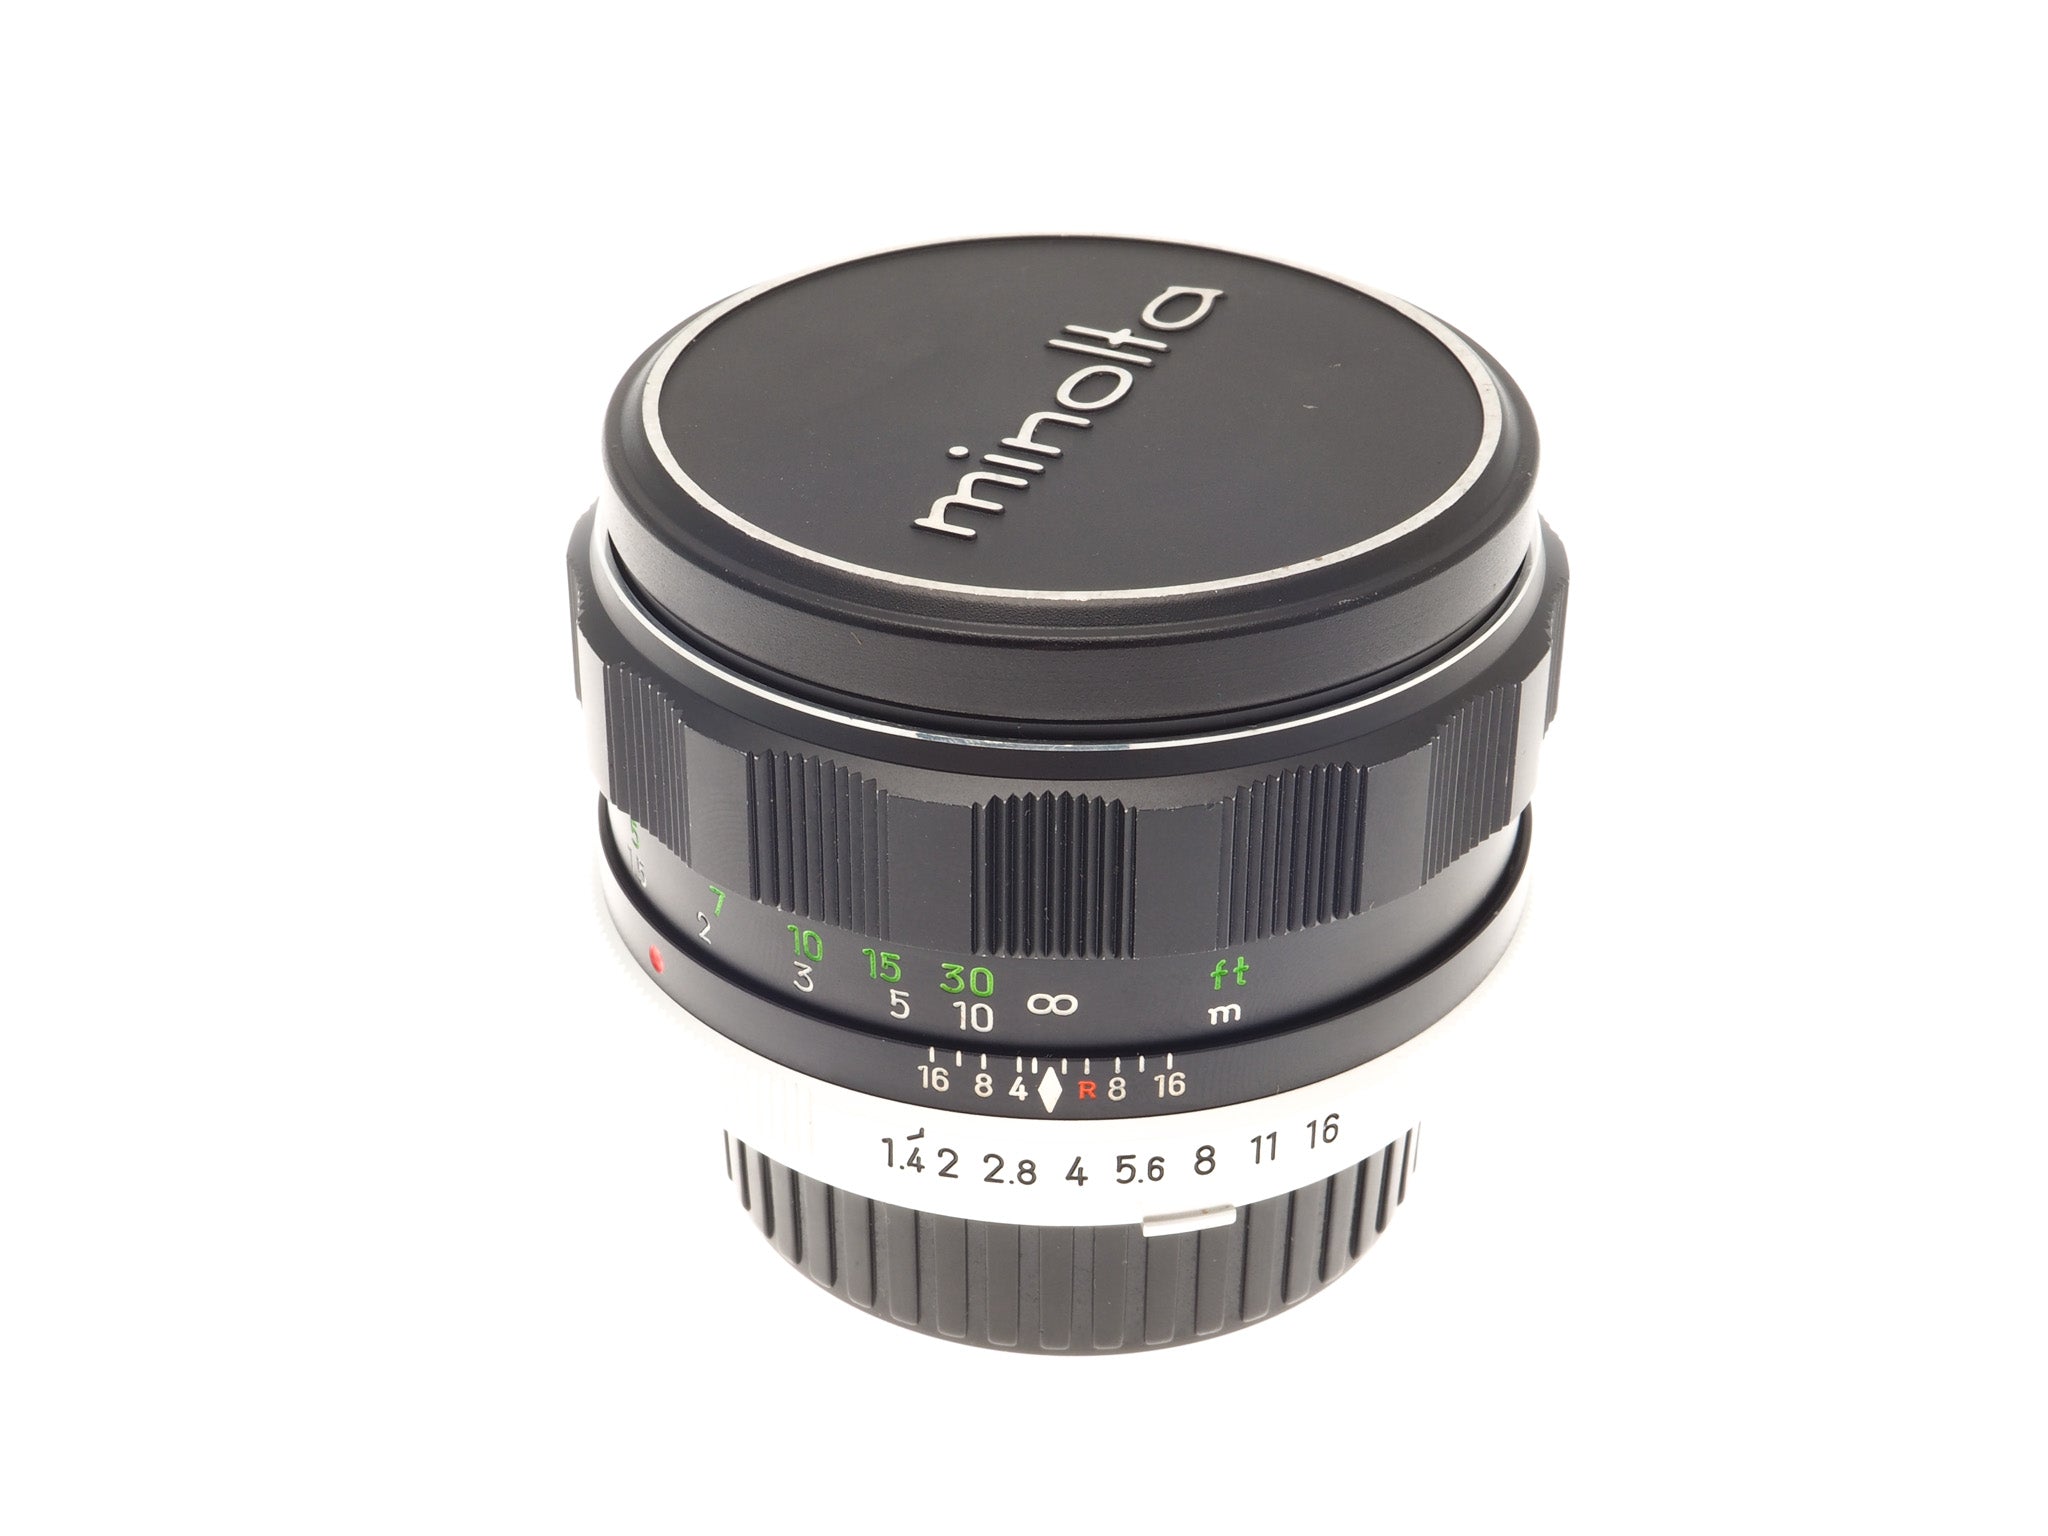 Minolta 58mm f1.4 MC Rokkor-PF - Lens